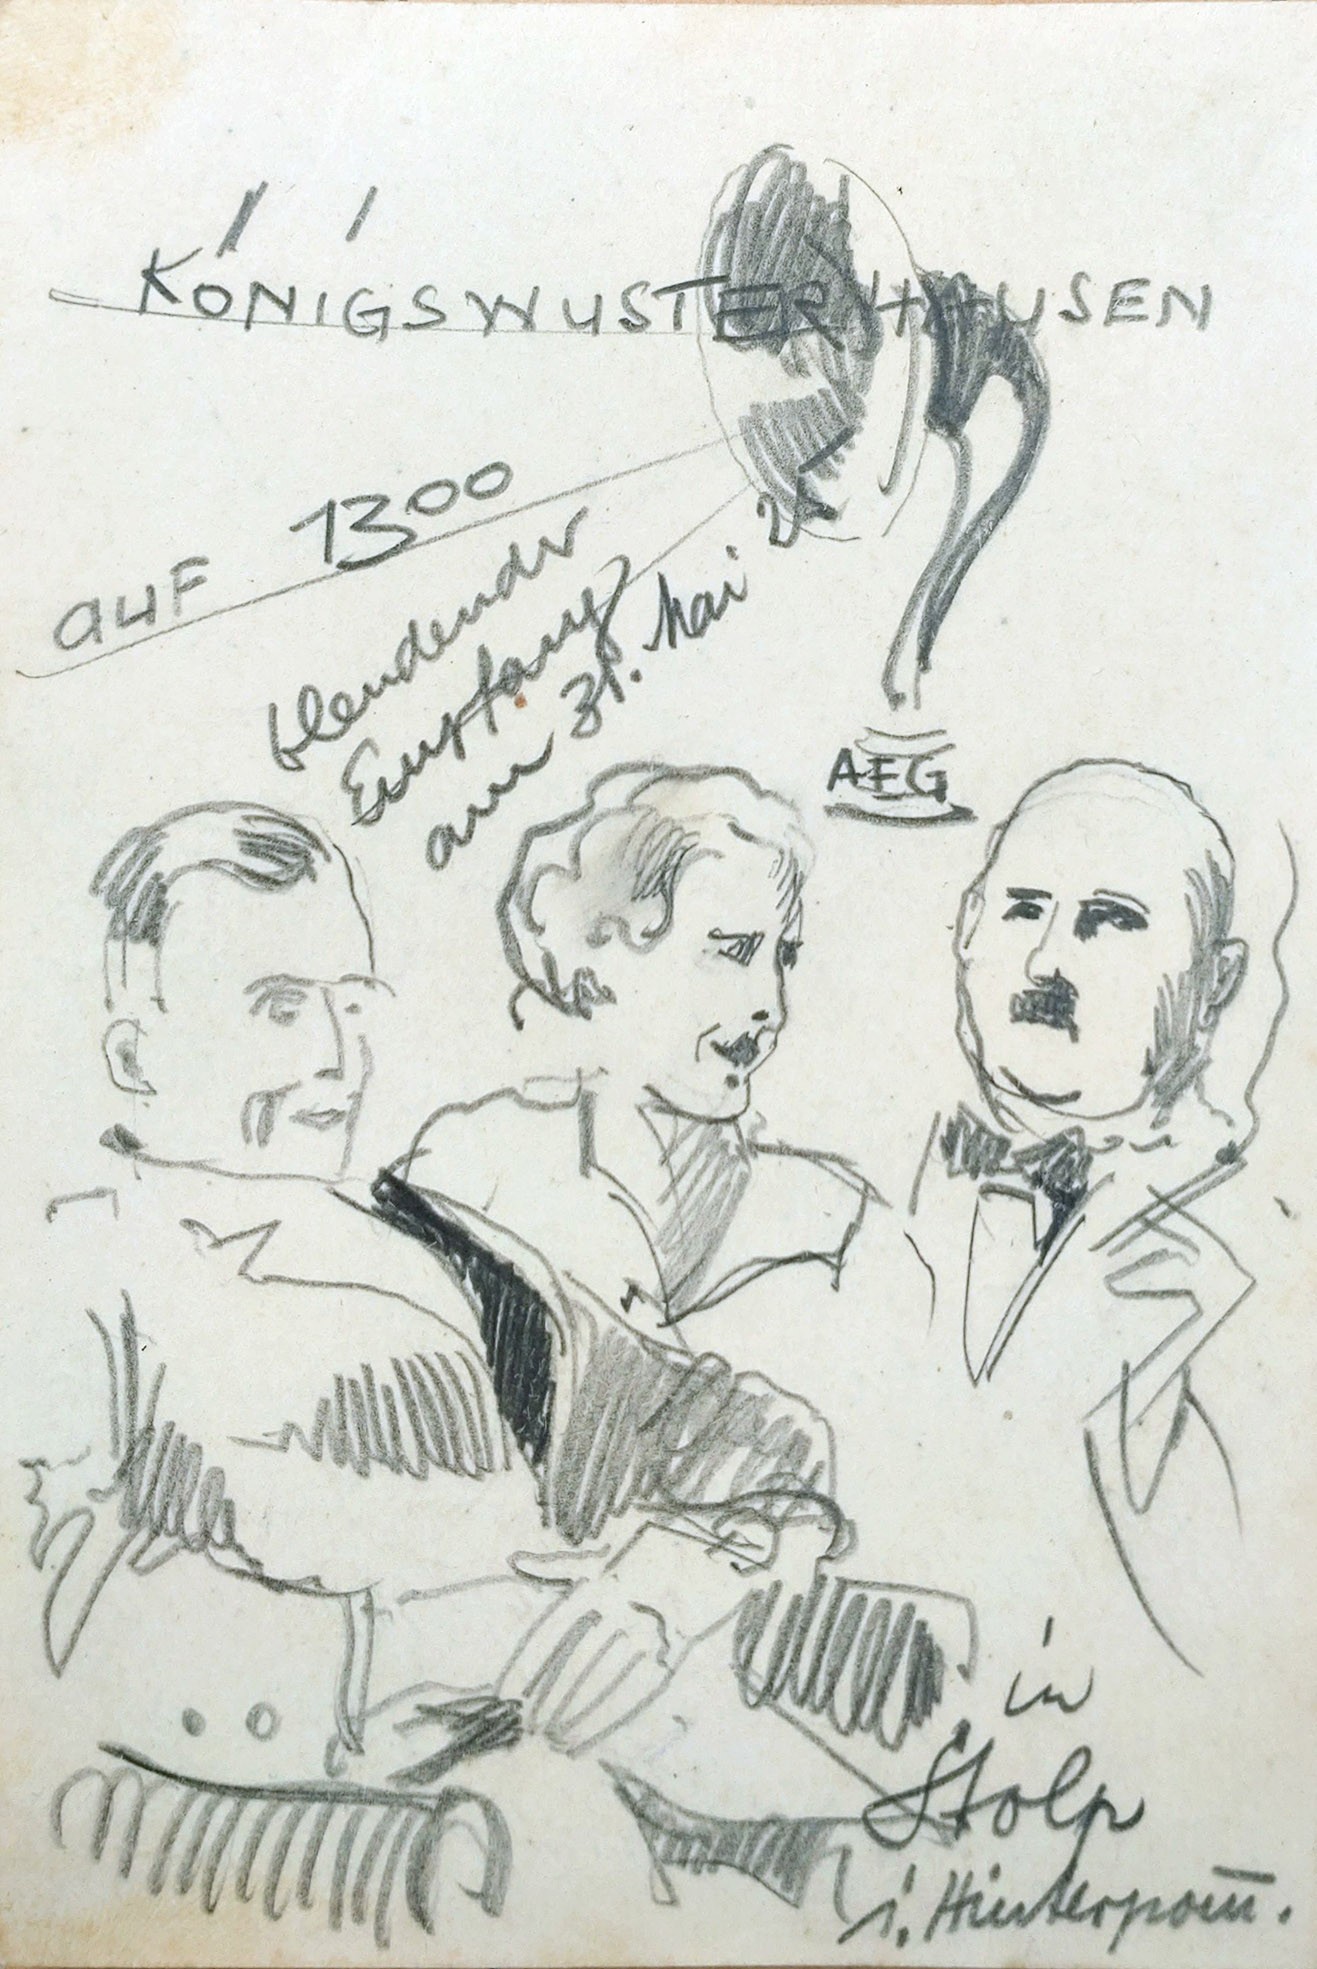 Postkarte als Empfangsbericht mit Zeichnung, 1925